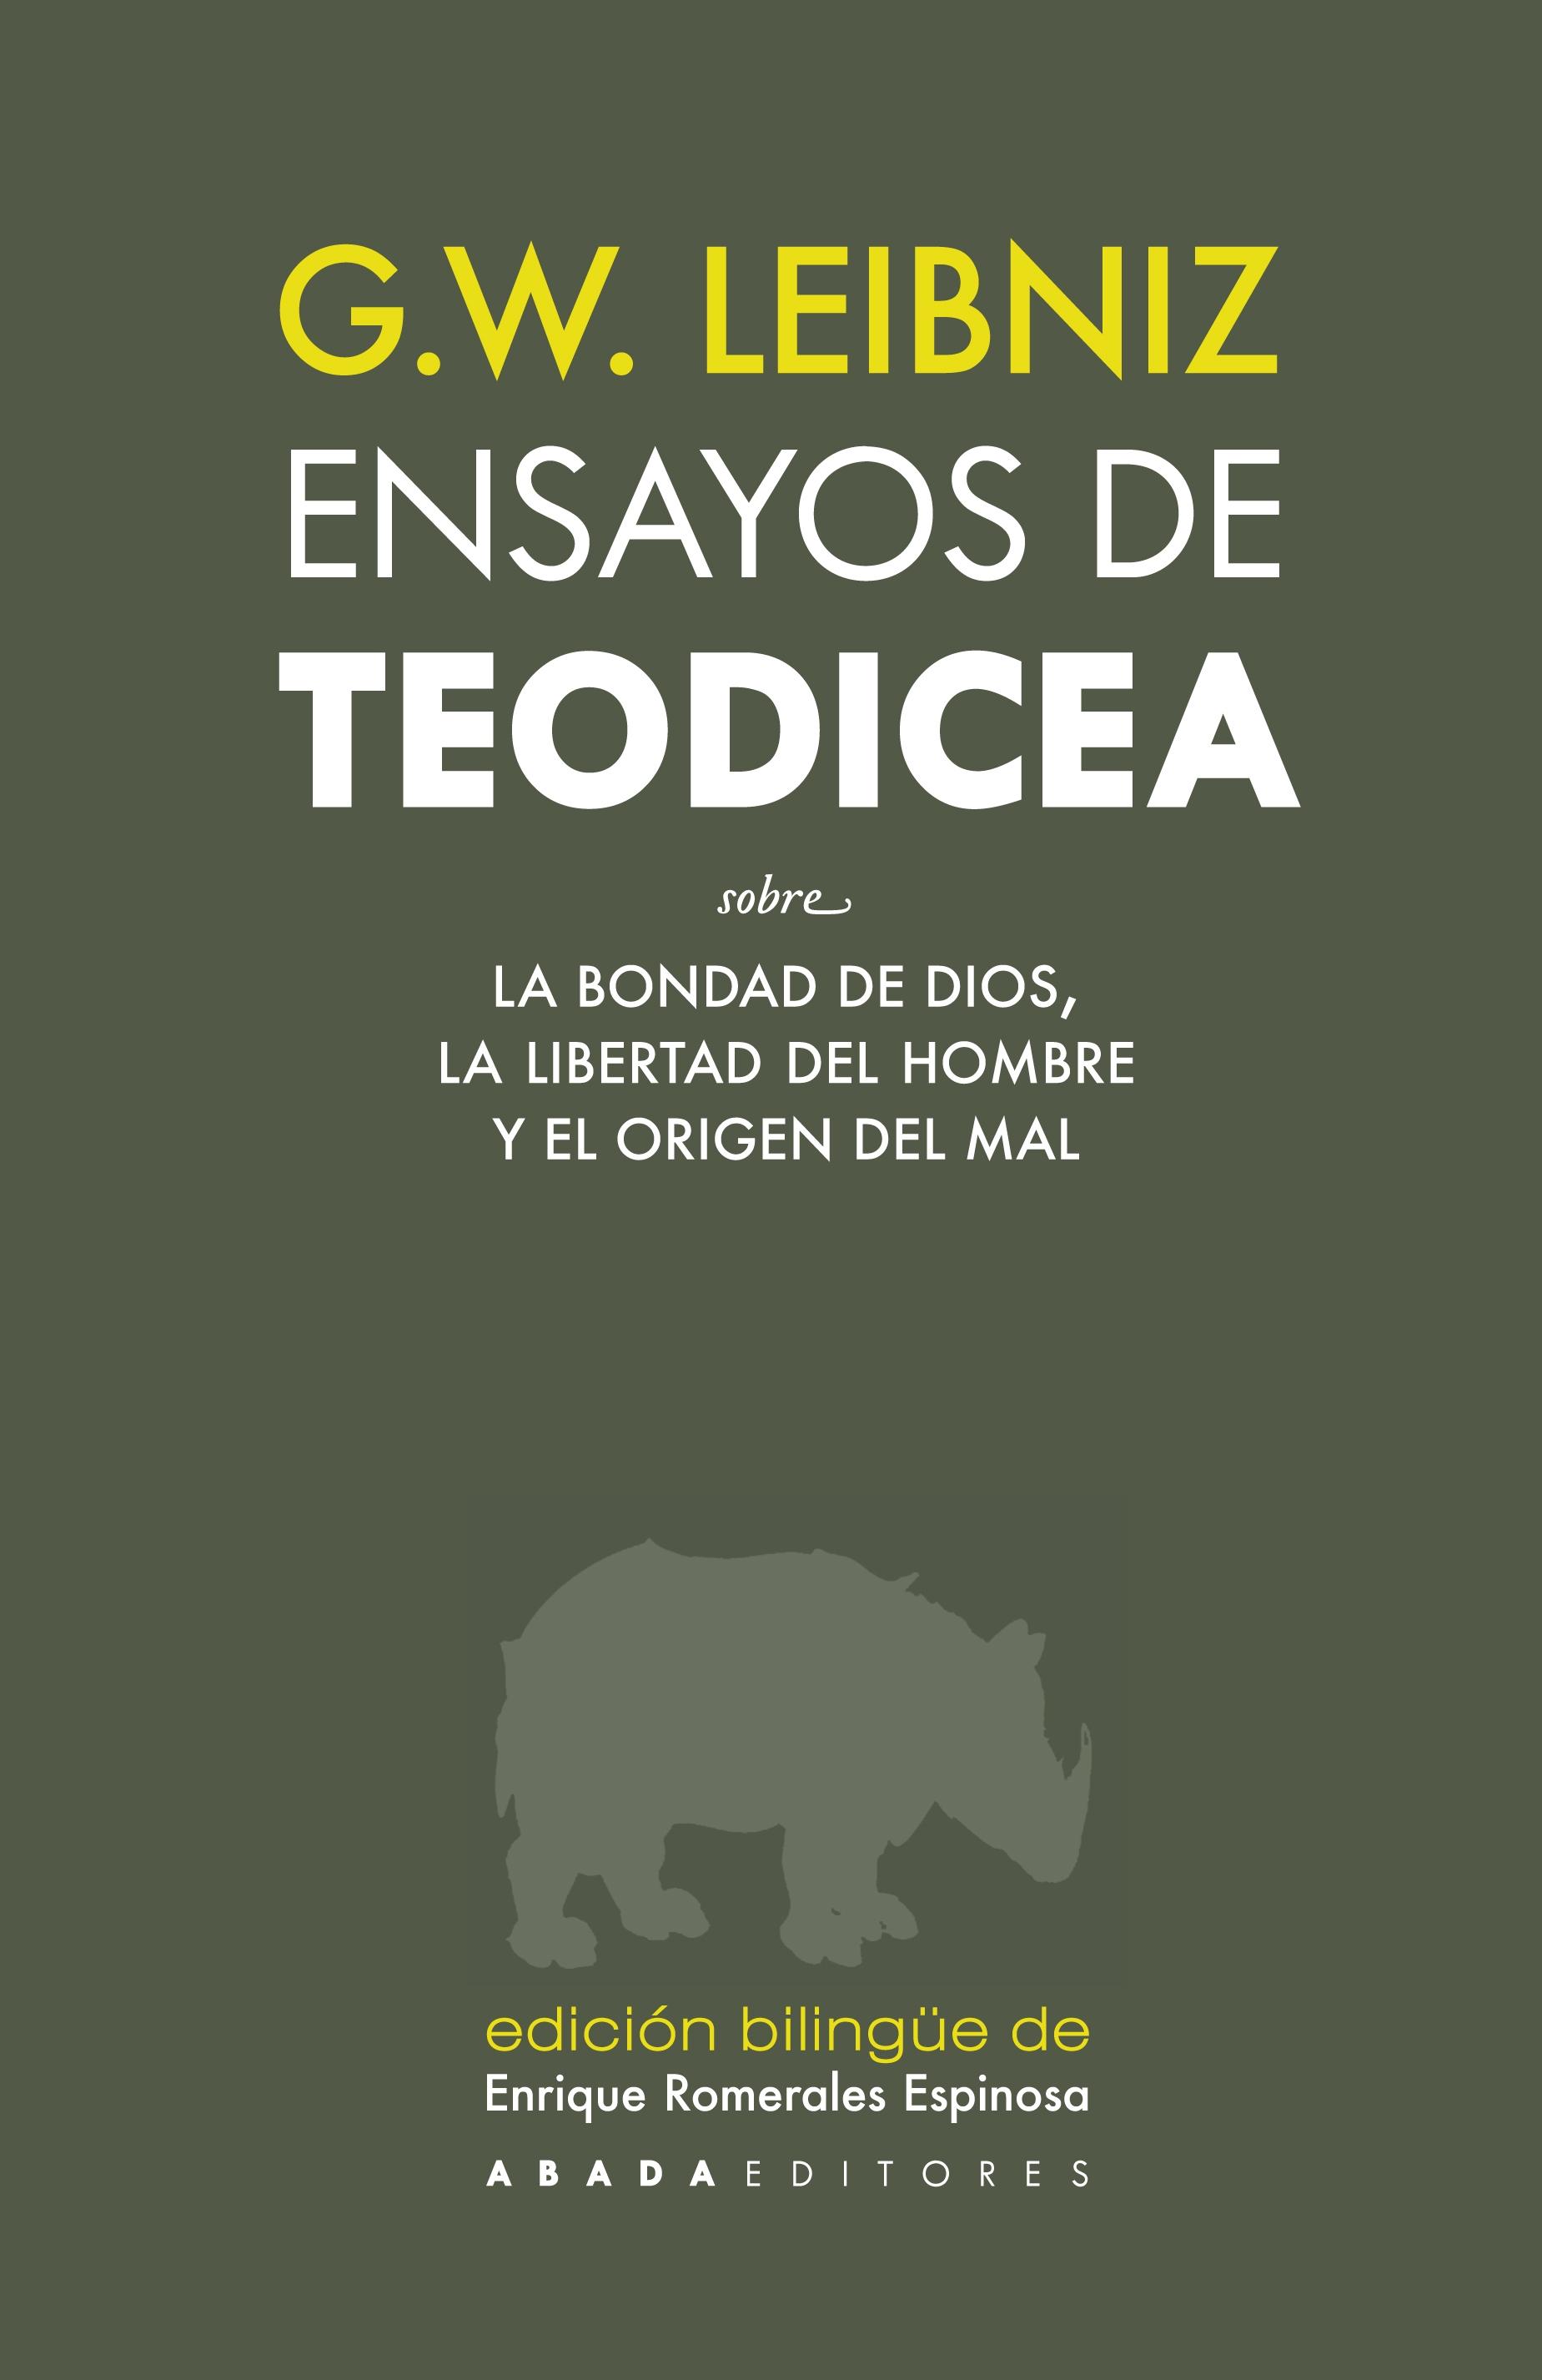 ENSAYOS DE TEODICEA SOBRE LA BONDAD DE DIOS, LA LIBERTAD DEL HOMBRE Y EL ORIGEN DEL MAL